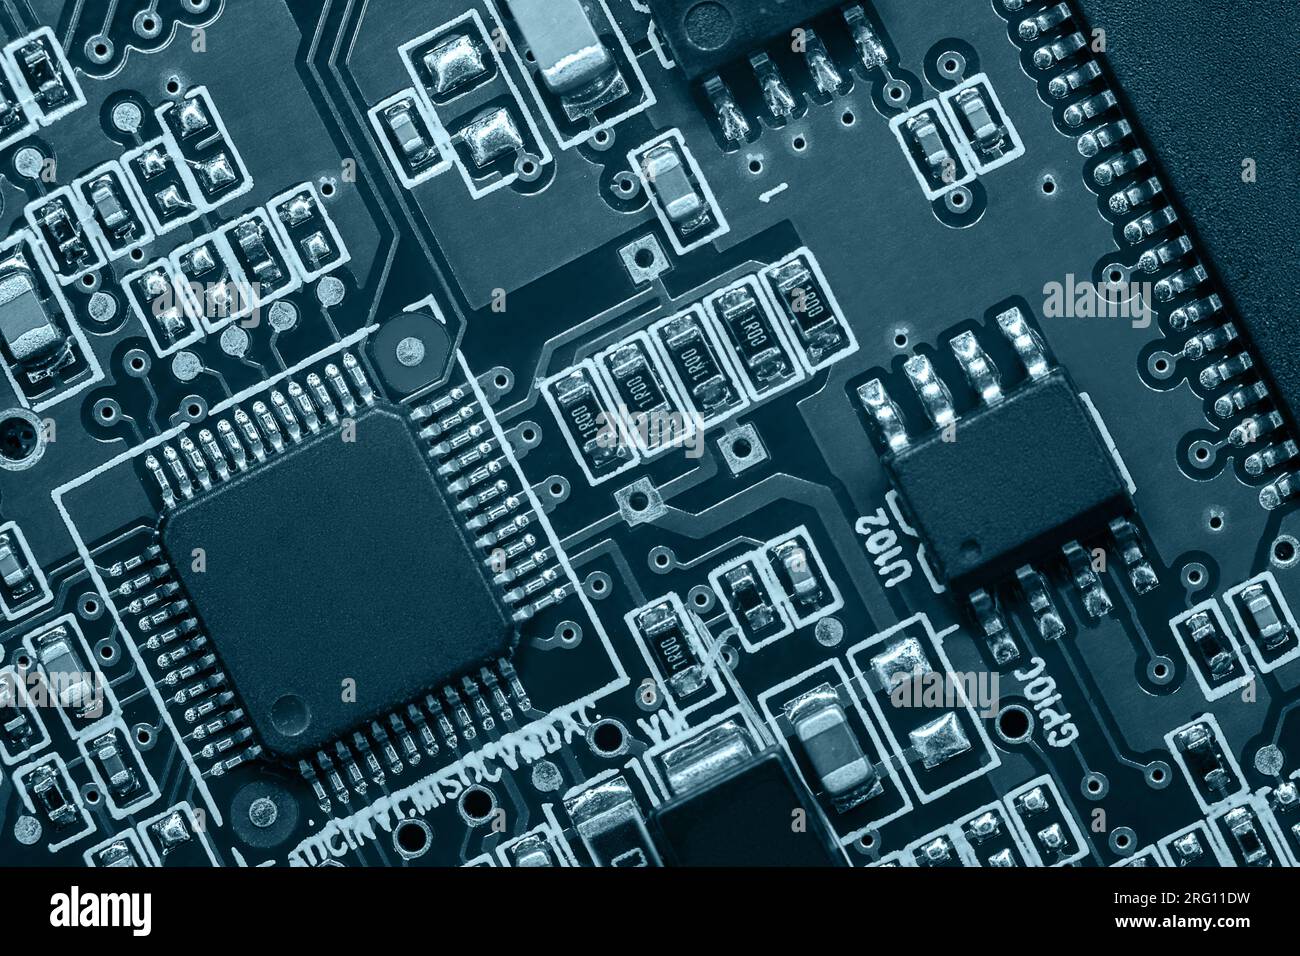 Gros plan de la carte de circuit imprimé avec processeur, circuits intégrés et de nombreux autres composants électriques passifs montés en surface. Banque D'Images